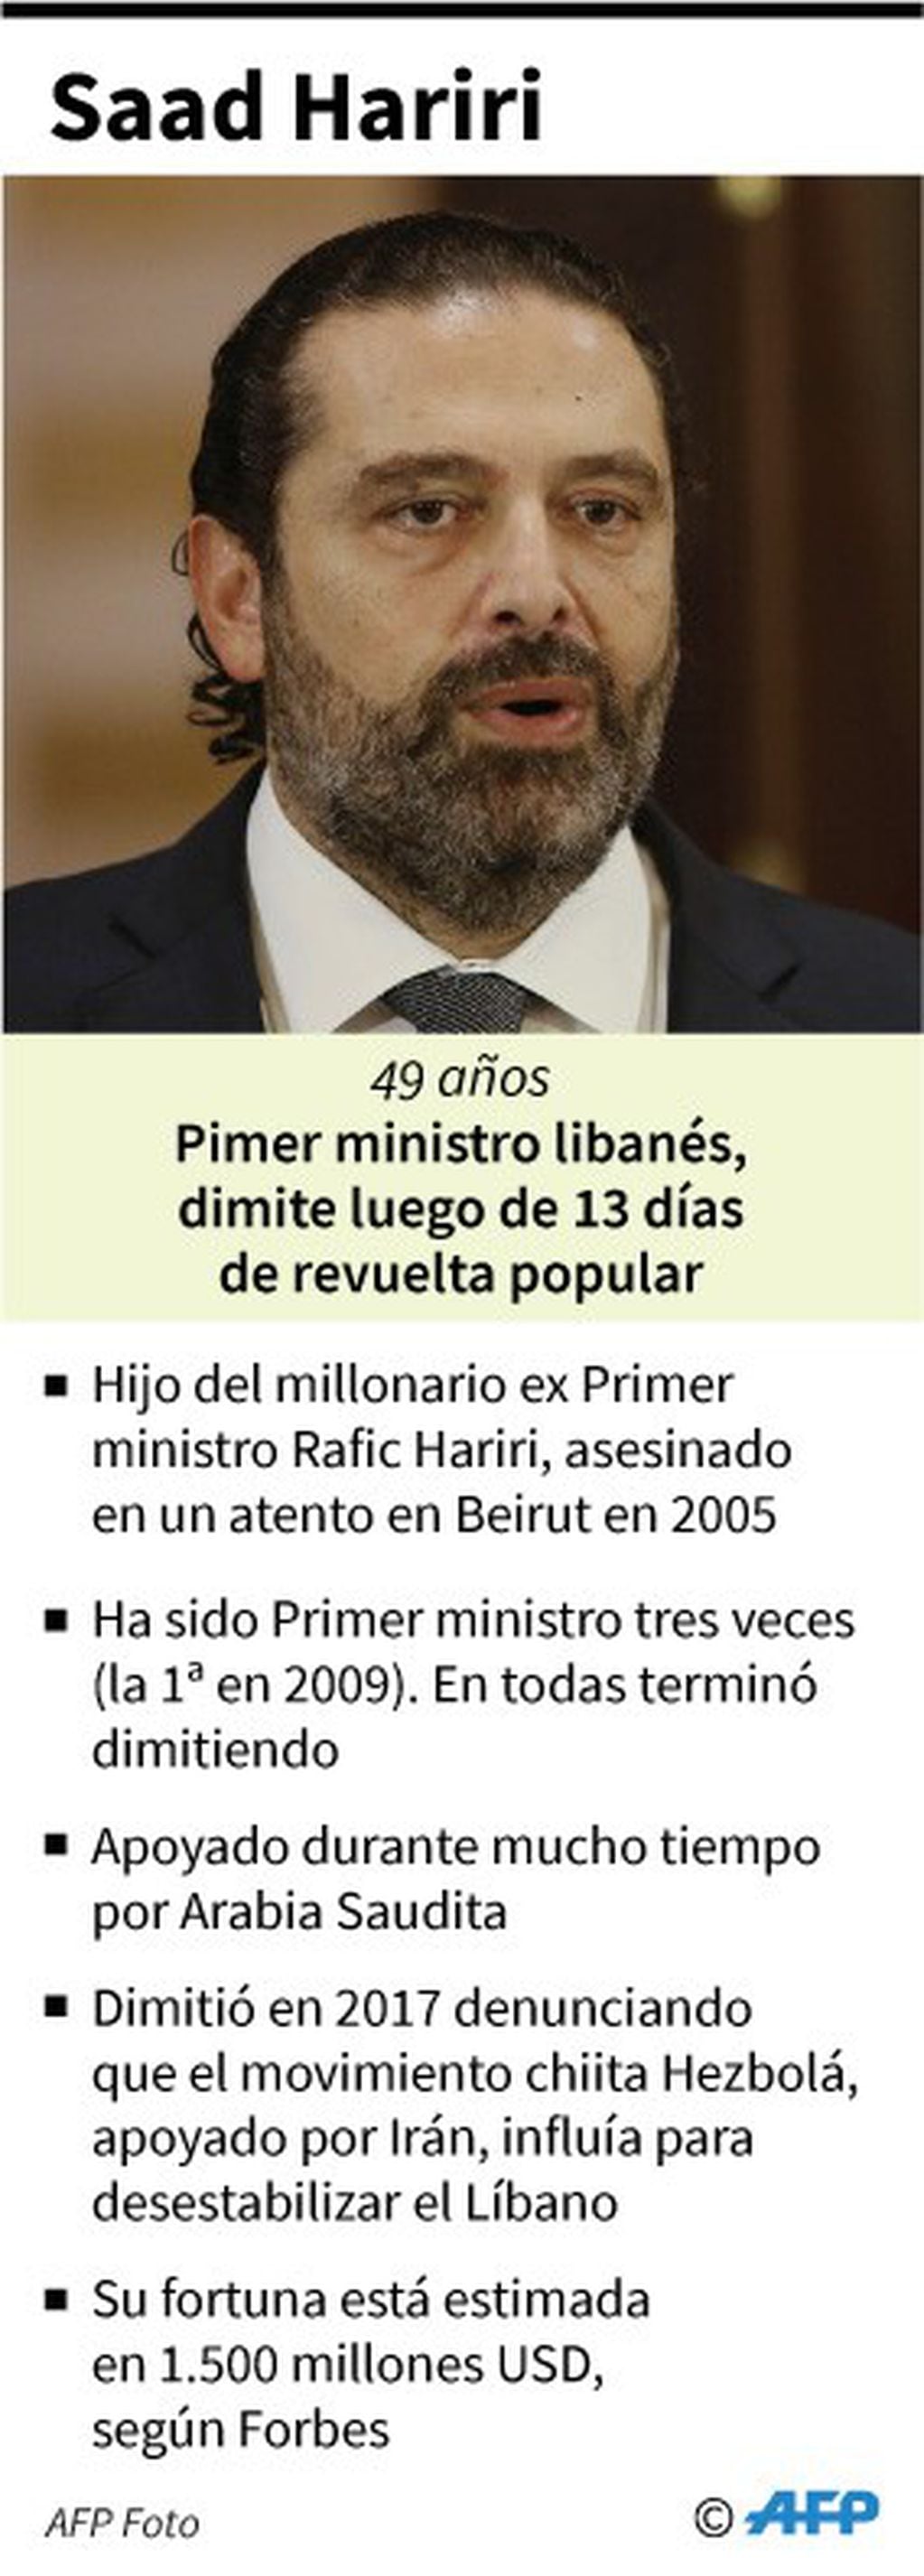 Biografía del ex primer ministro libanés Saad Hariri, que el martes dimitió junto a su gobierno. Crédito: AFP / AFP